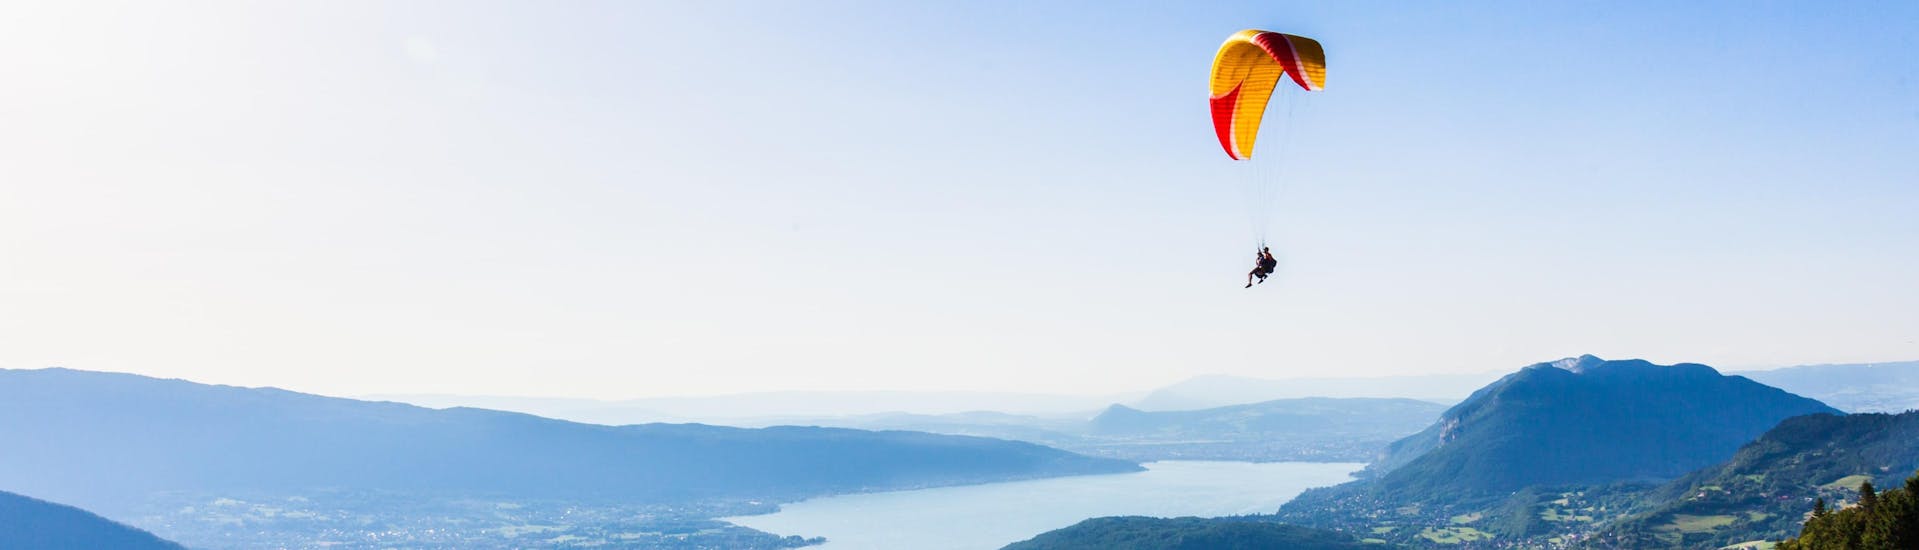 Un pilote de tandem et son passager planent doucement dans le ciel en faisant du parapente au-dessus du lac d'Annecy.